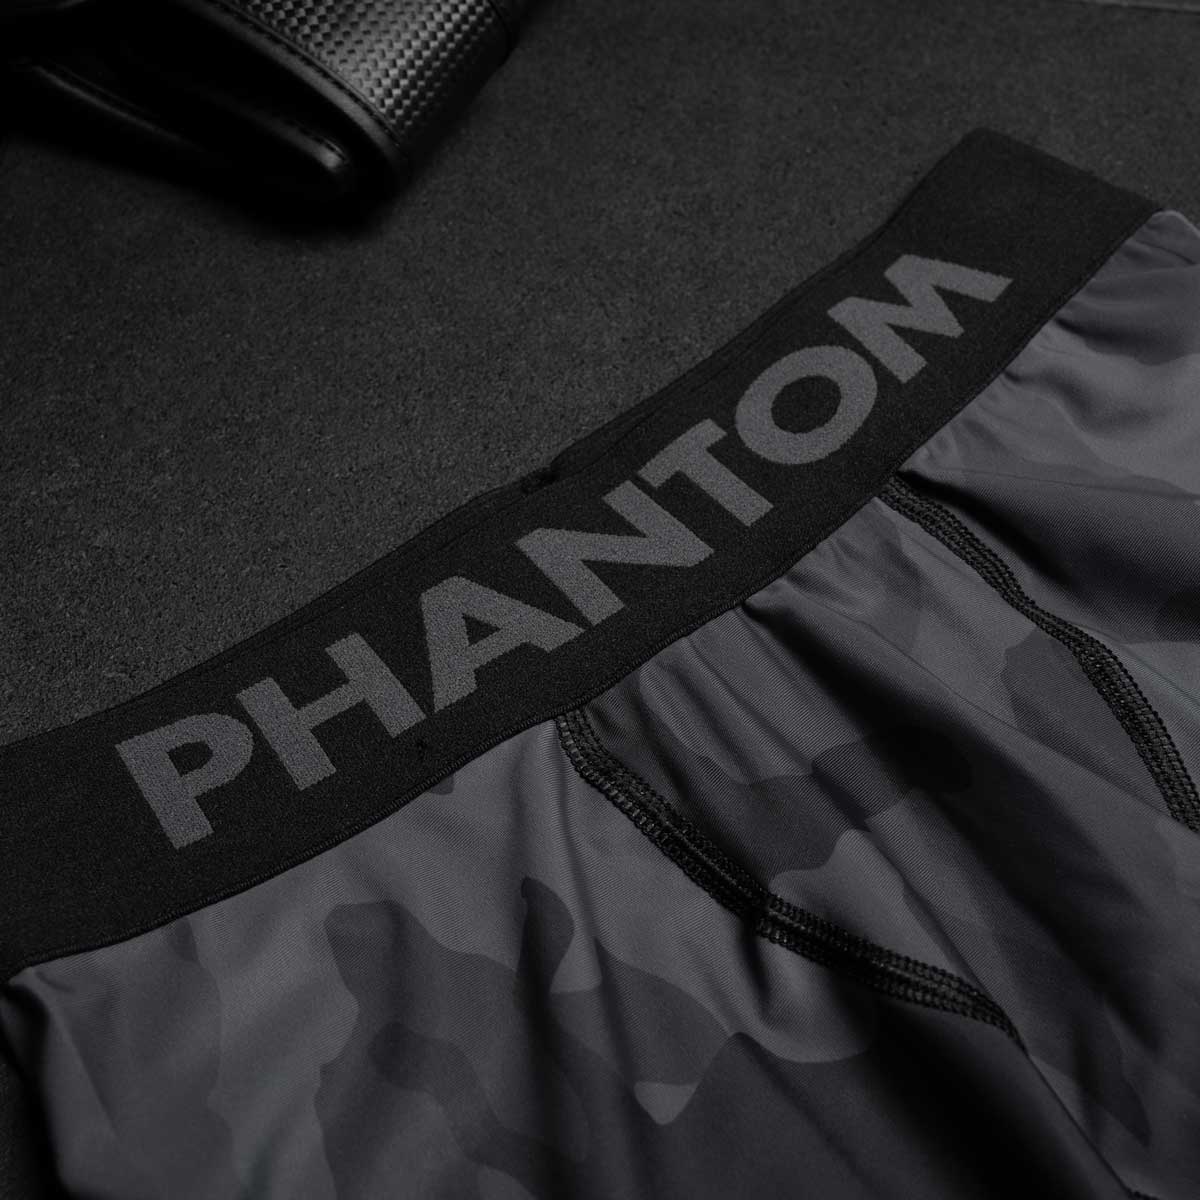 Phantom Compression Tights im Camo Design für Kampfsport Training und Wettkampf. Ideal auf der Matte beim Ringen, Grappling, BJJ oder auch im MMA. Mit breitem Bund für ein angenehmes Tragegefühl.